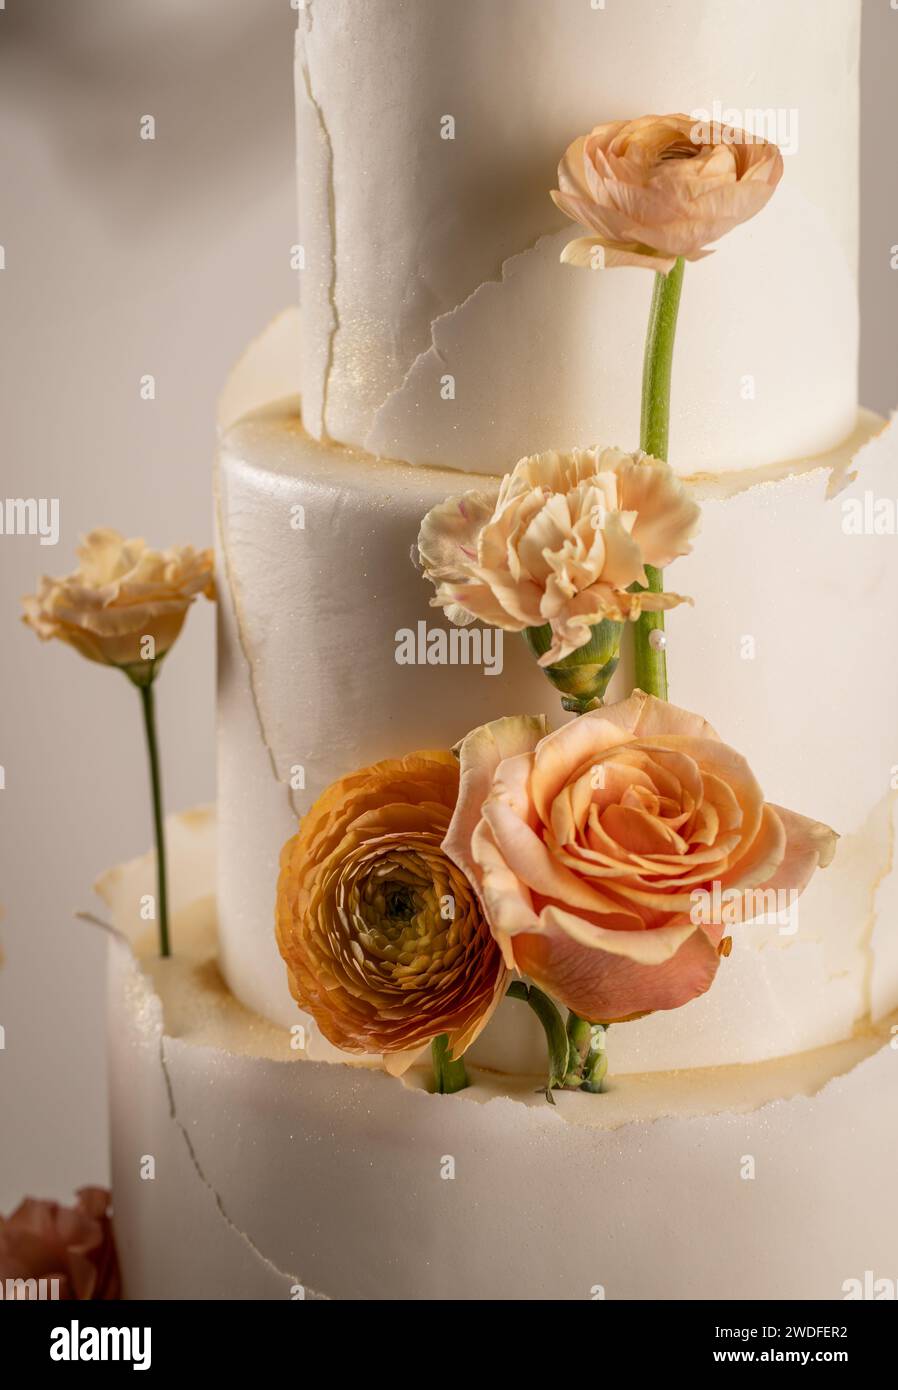 Semplice torta nuziale con fiori, primo piano Foto Stock